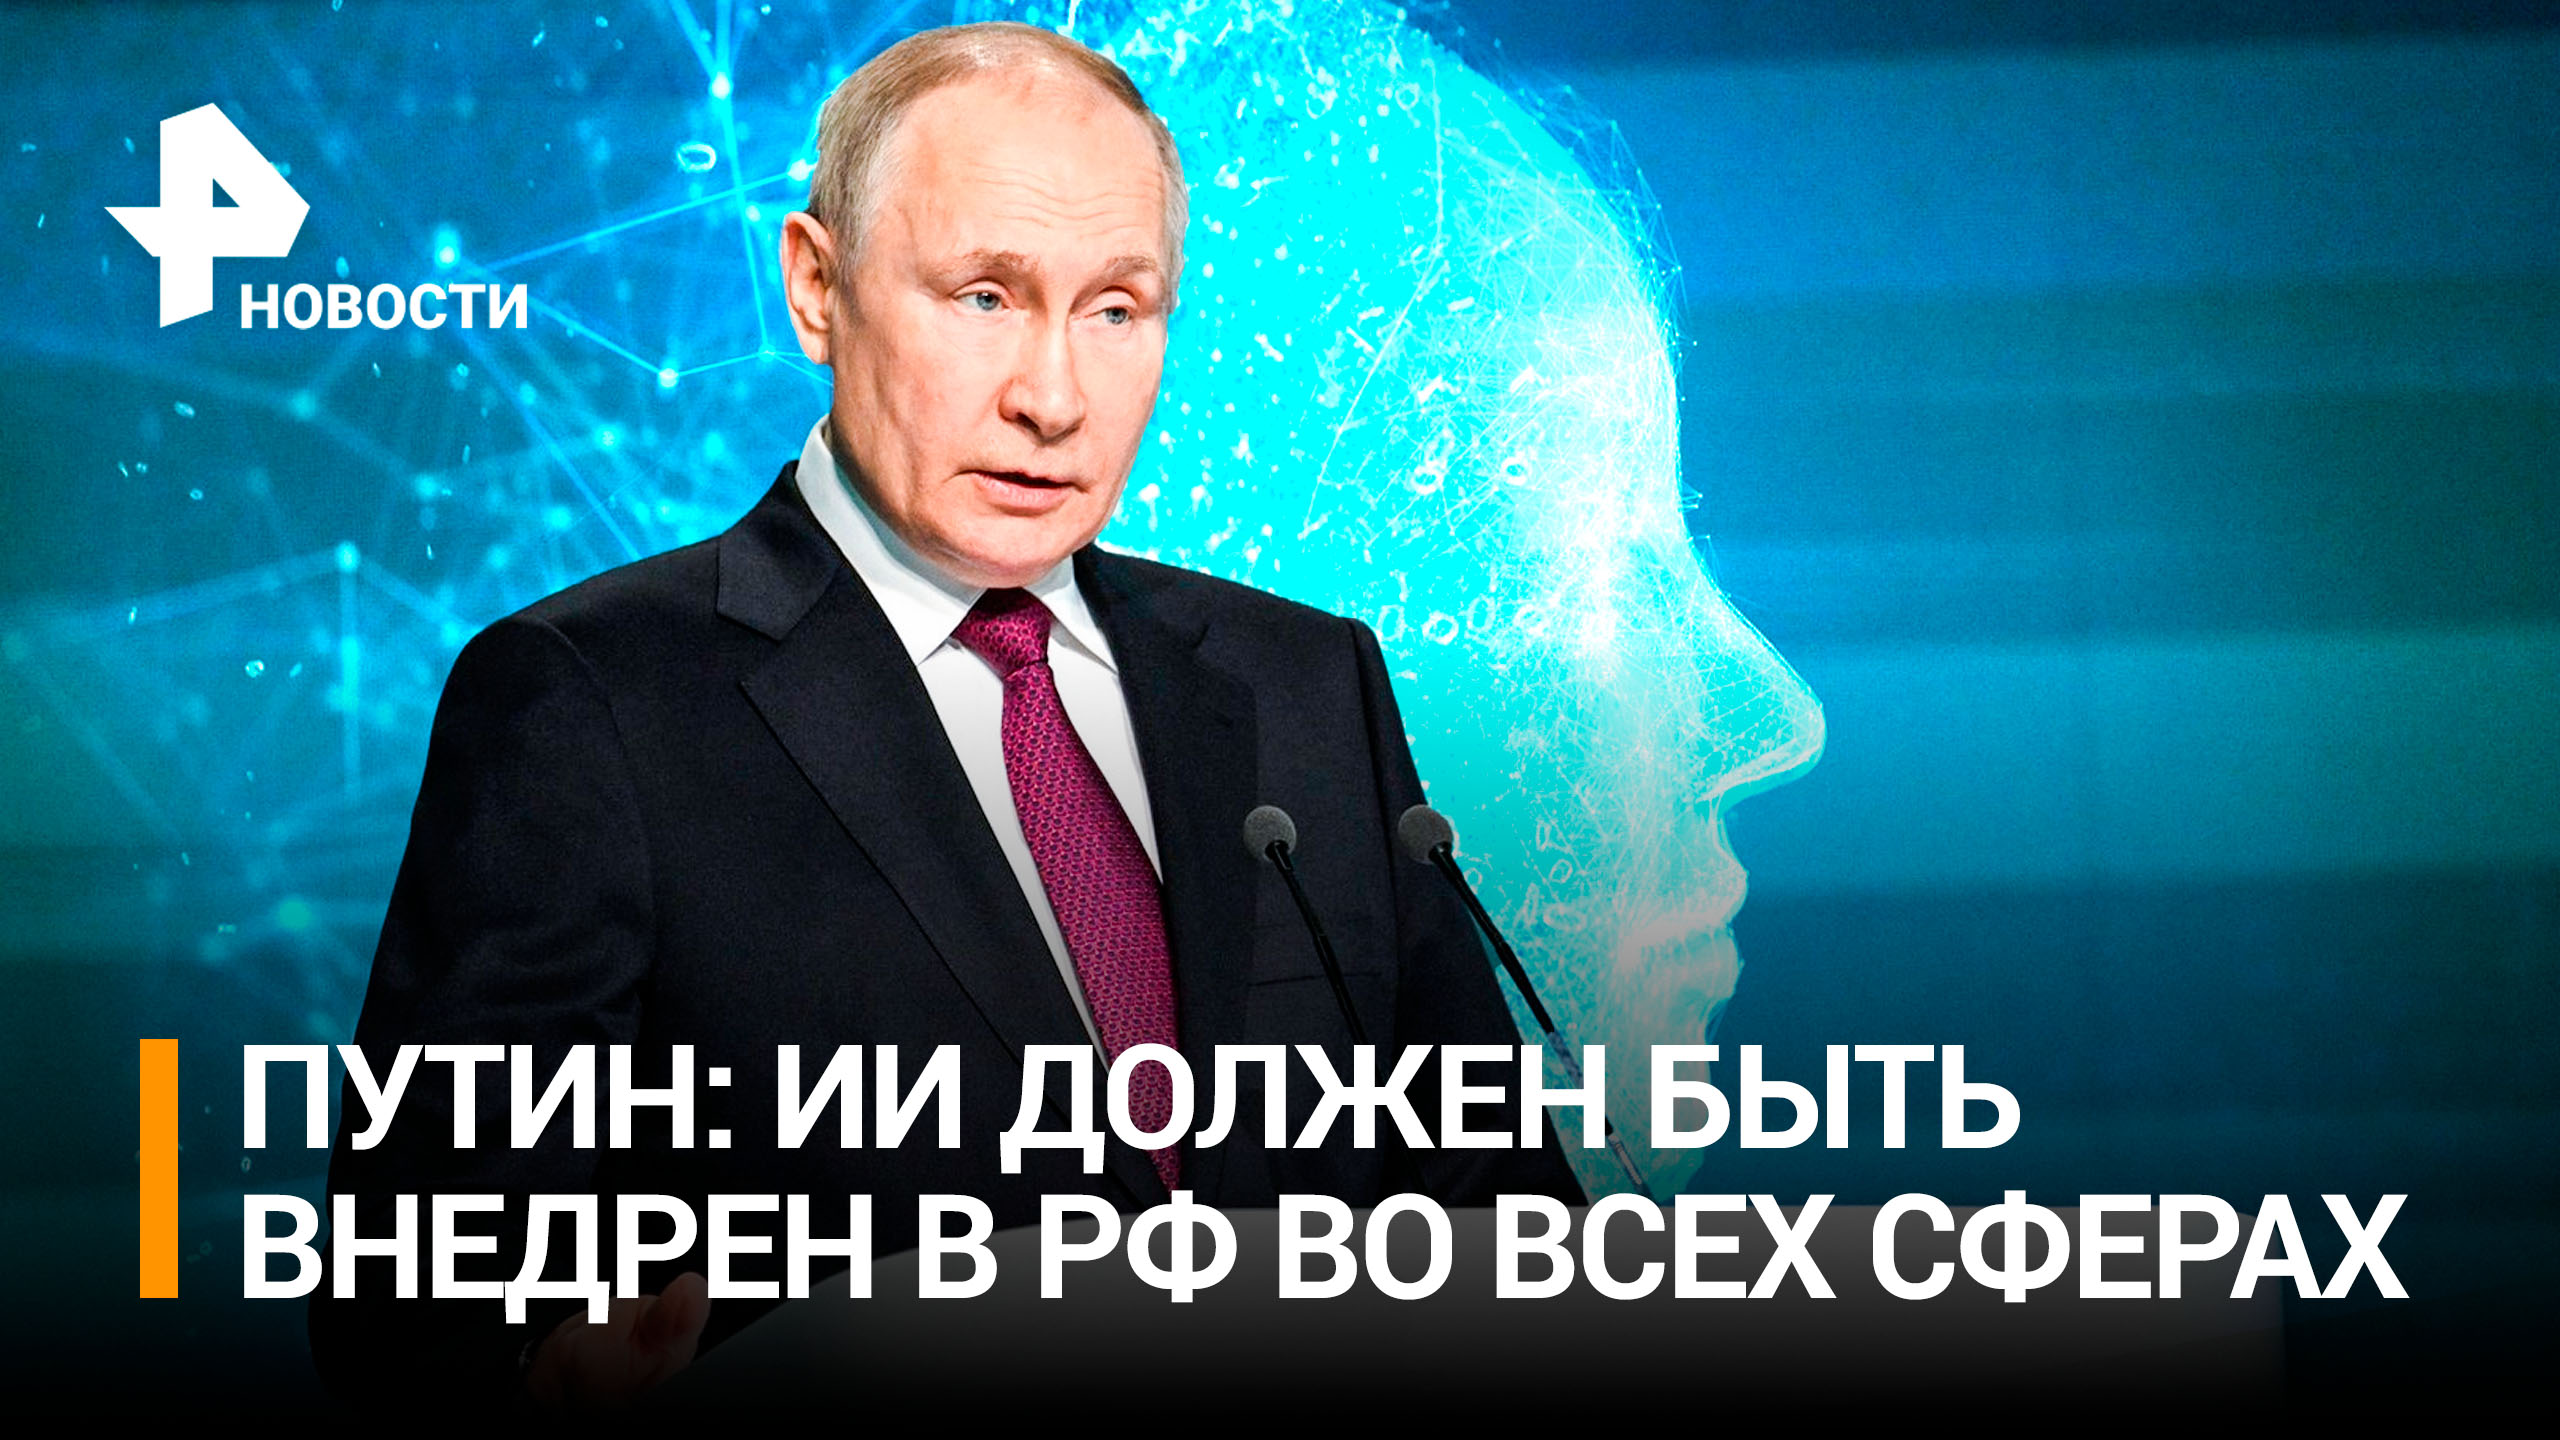 Путин поставил задачи по внедрению технологий искусственного интеллекта во всех сферах